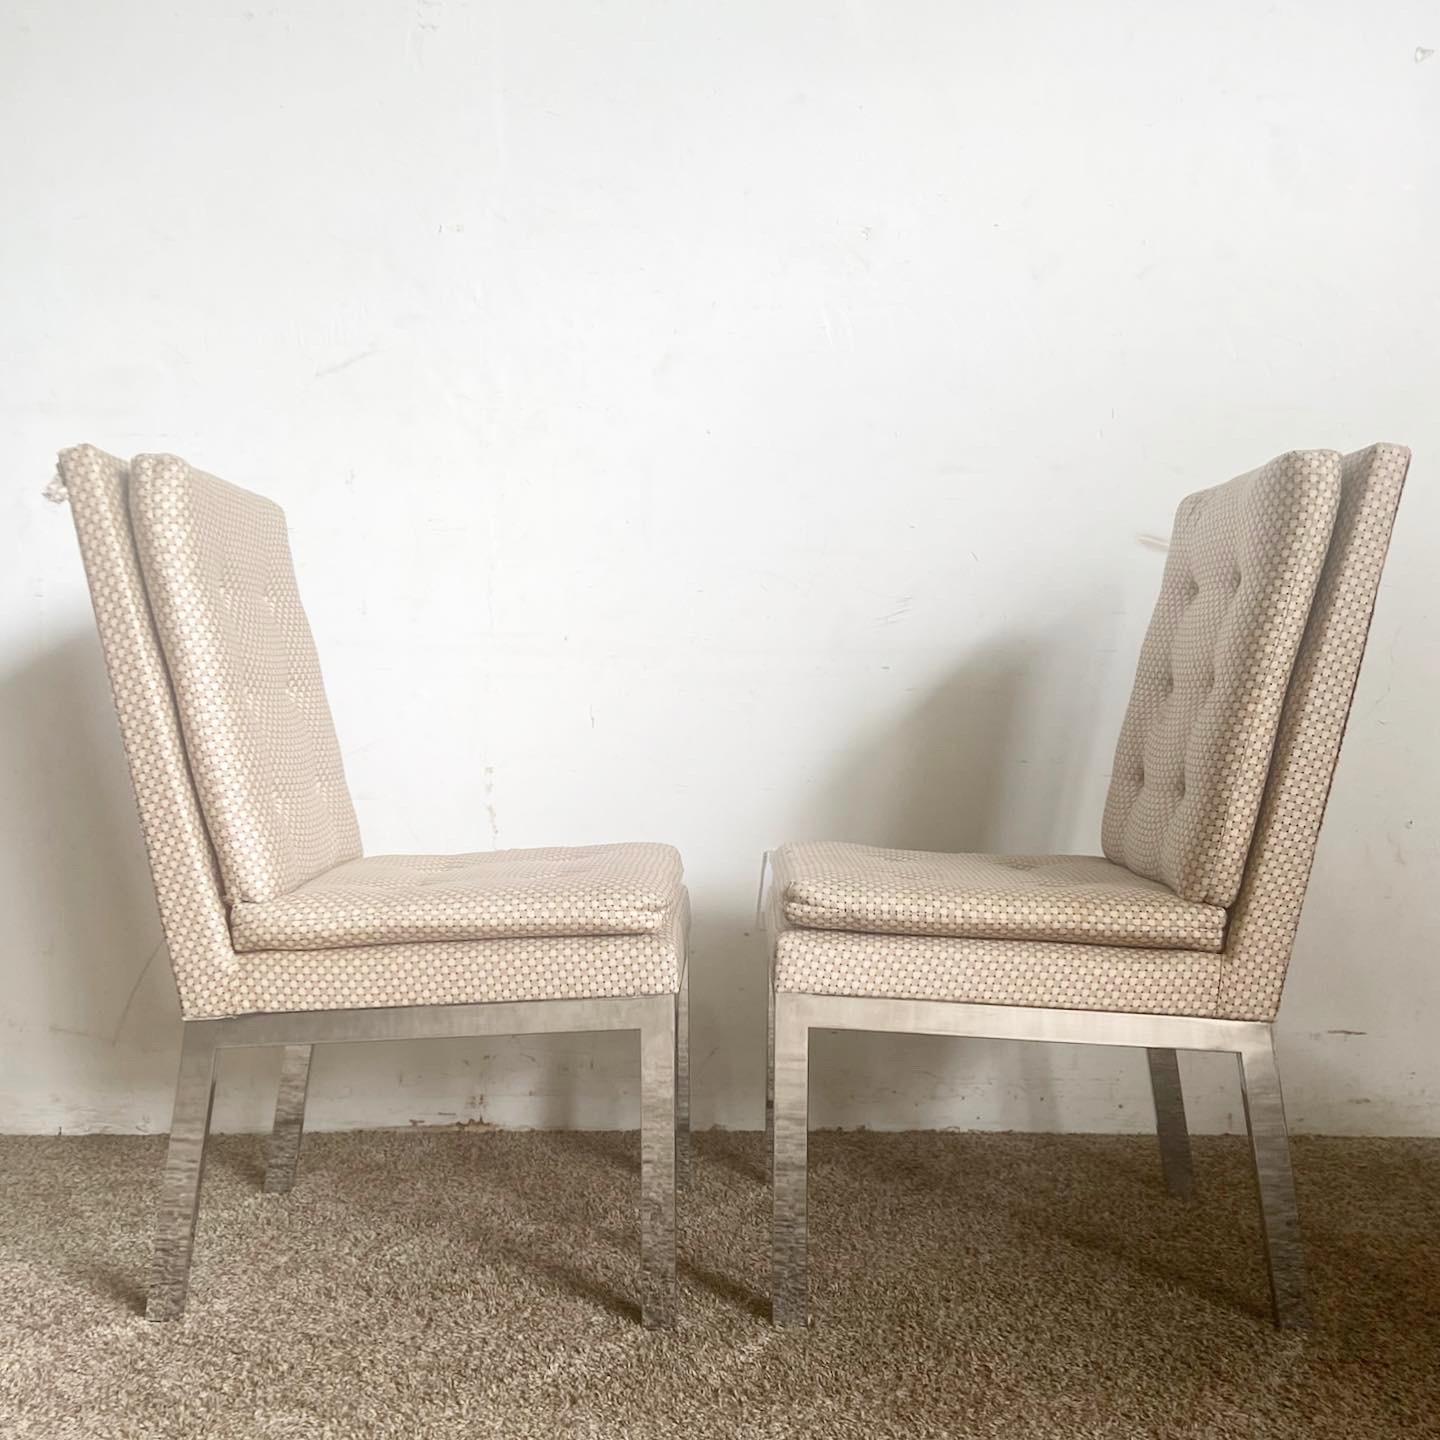 Erleben Sie die Verschmelzung von Stil und Komfort mit den DIA Chrome Tufted Chairs. Dieses Set aus 4 Mid-Century Modern-Esszimmerstühlen des Design Institute of America kombiniert elegante Chromrahmen mit plüschigem, getuftetem Stoff und verkörpert